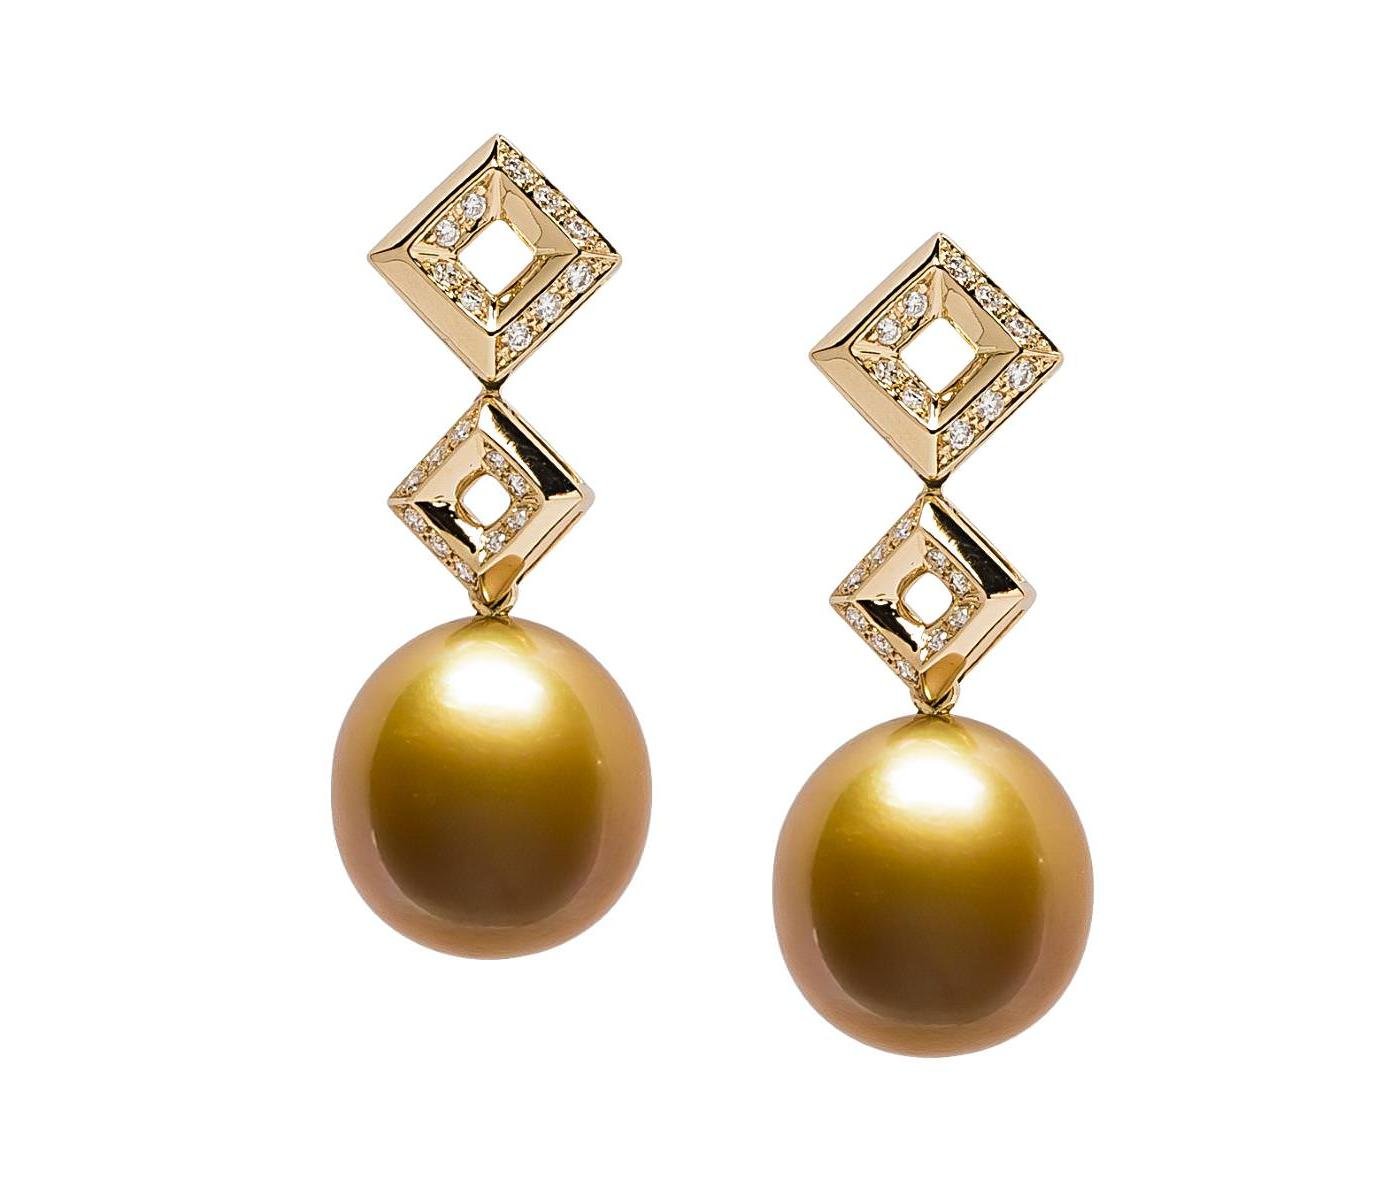 Earrings by Jewelmer